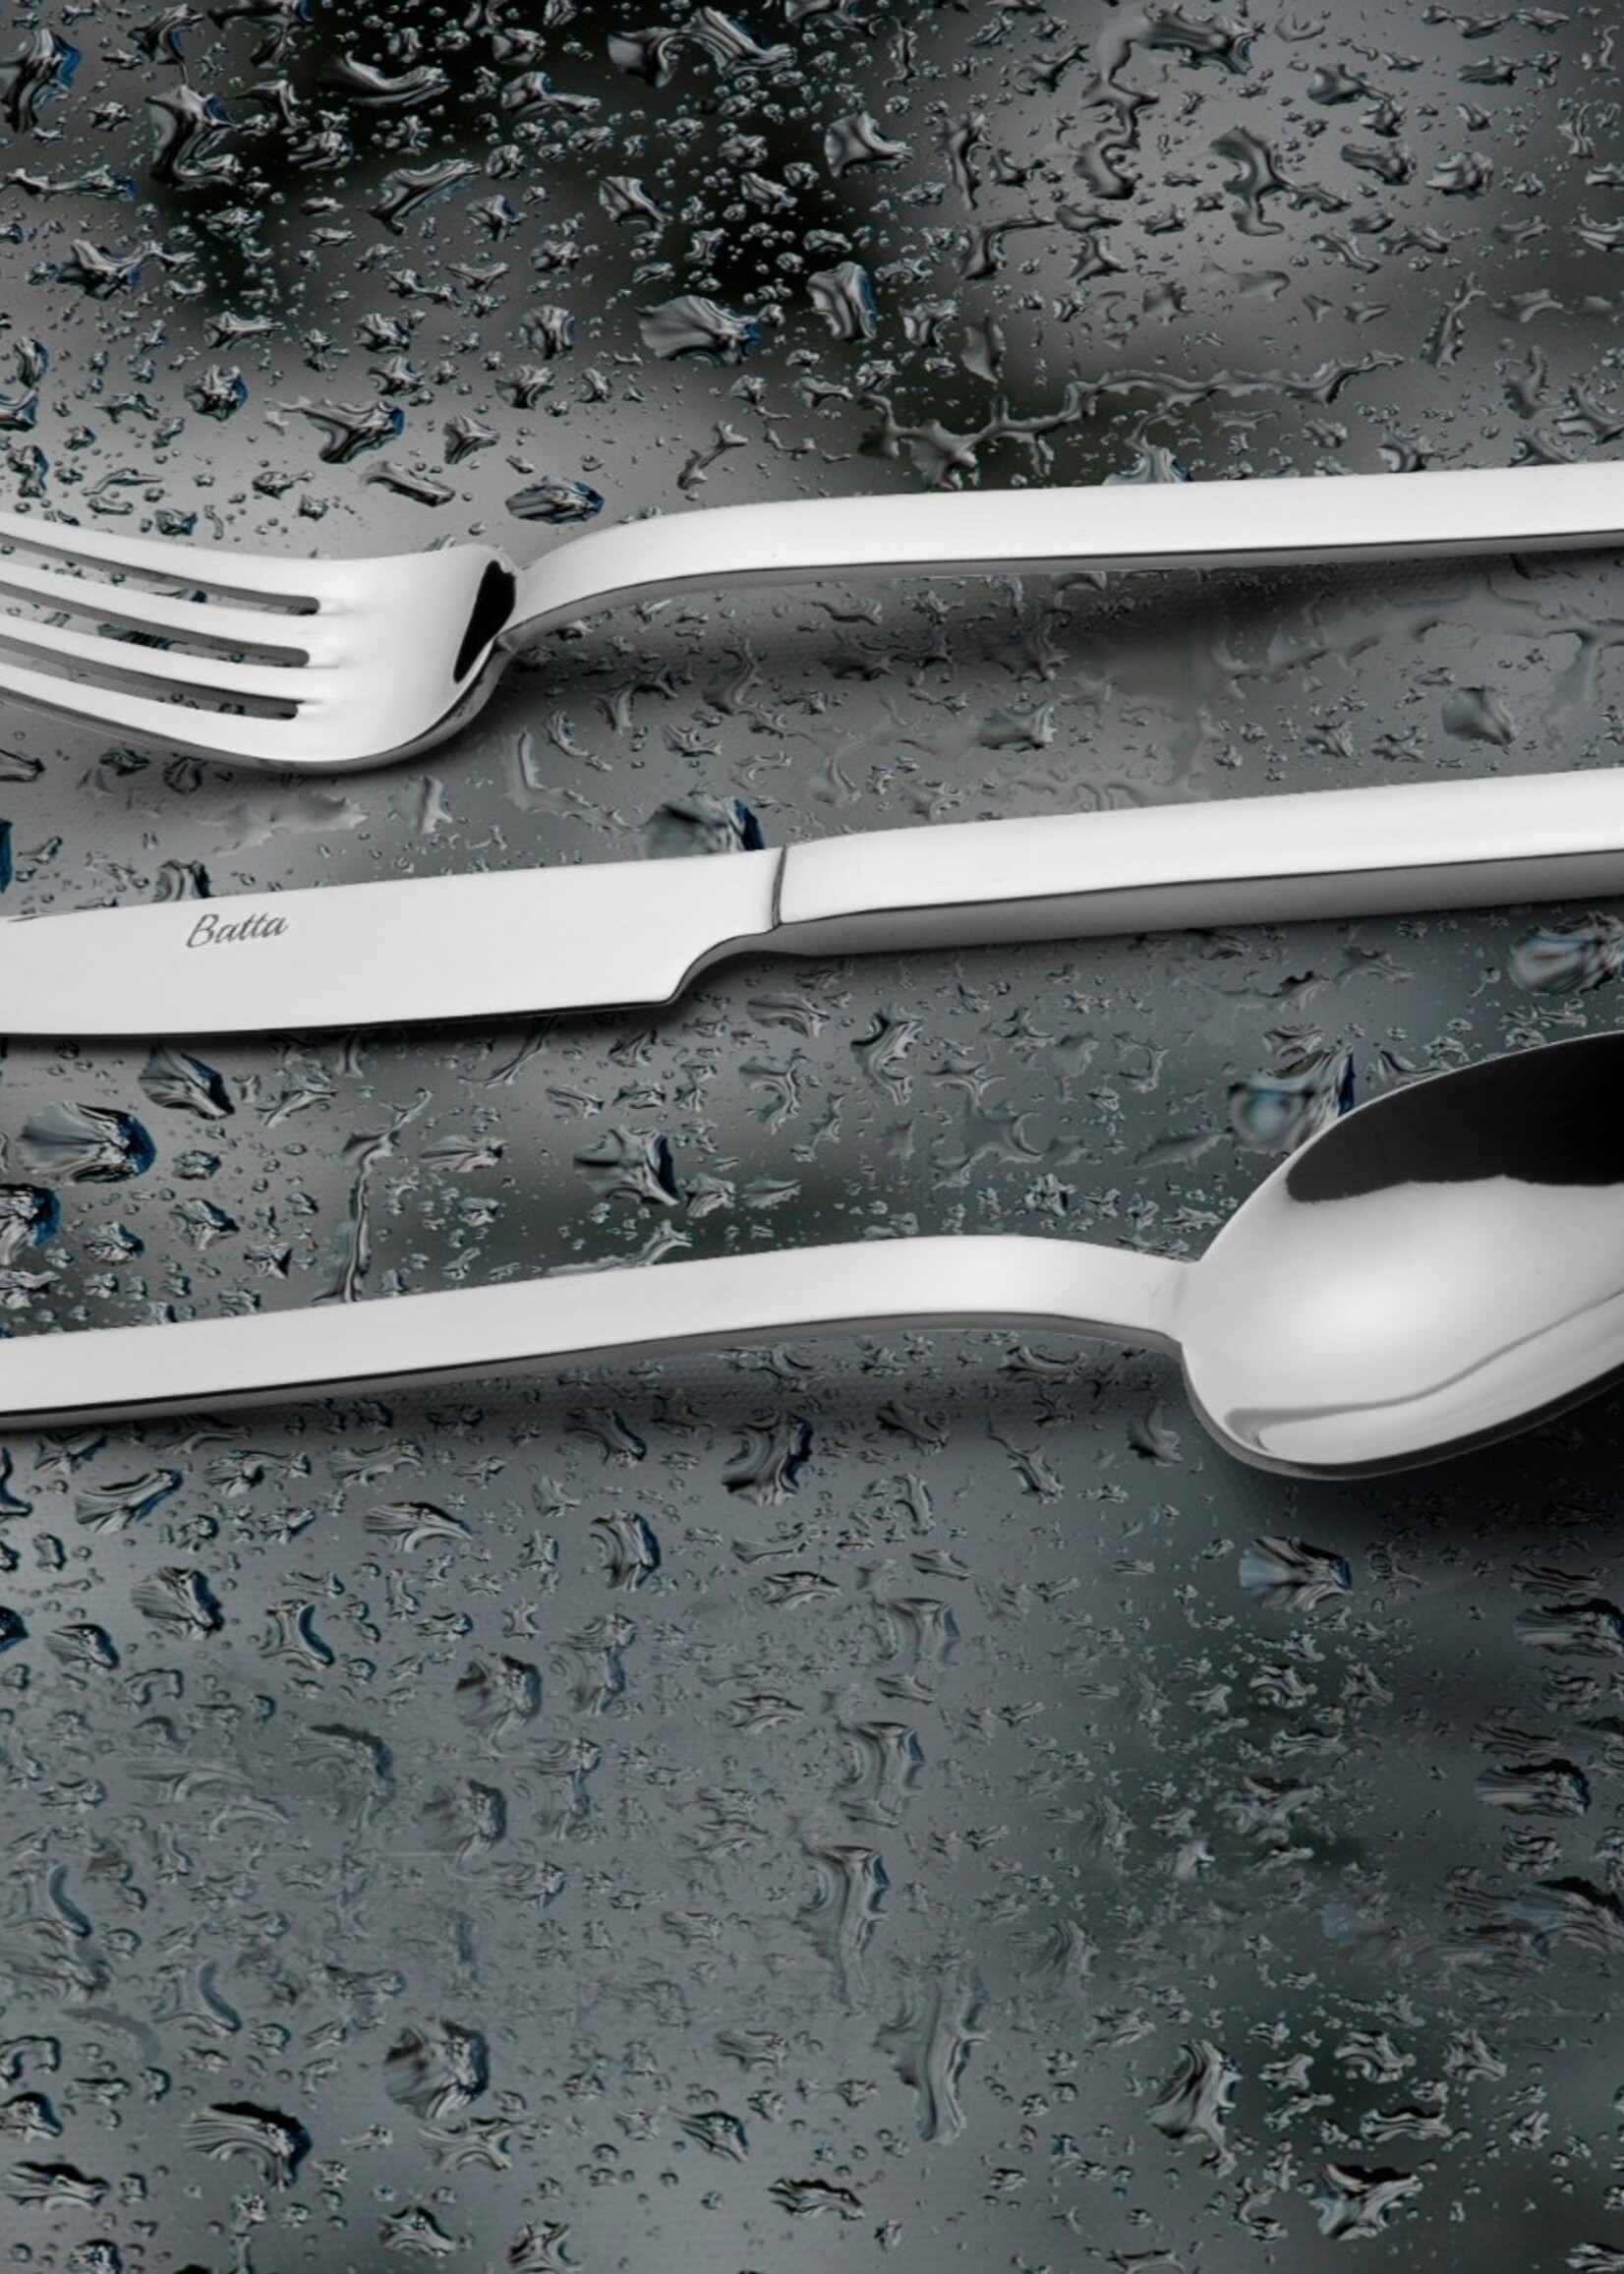 Batta Table Knive - Stainless Steel – 8100 MODEL - Batta